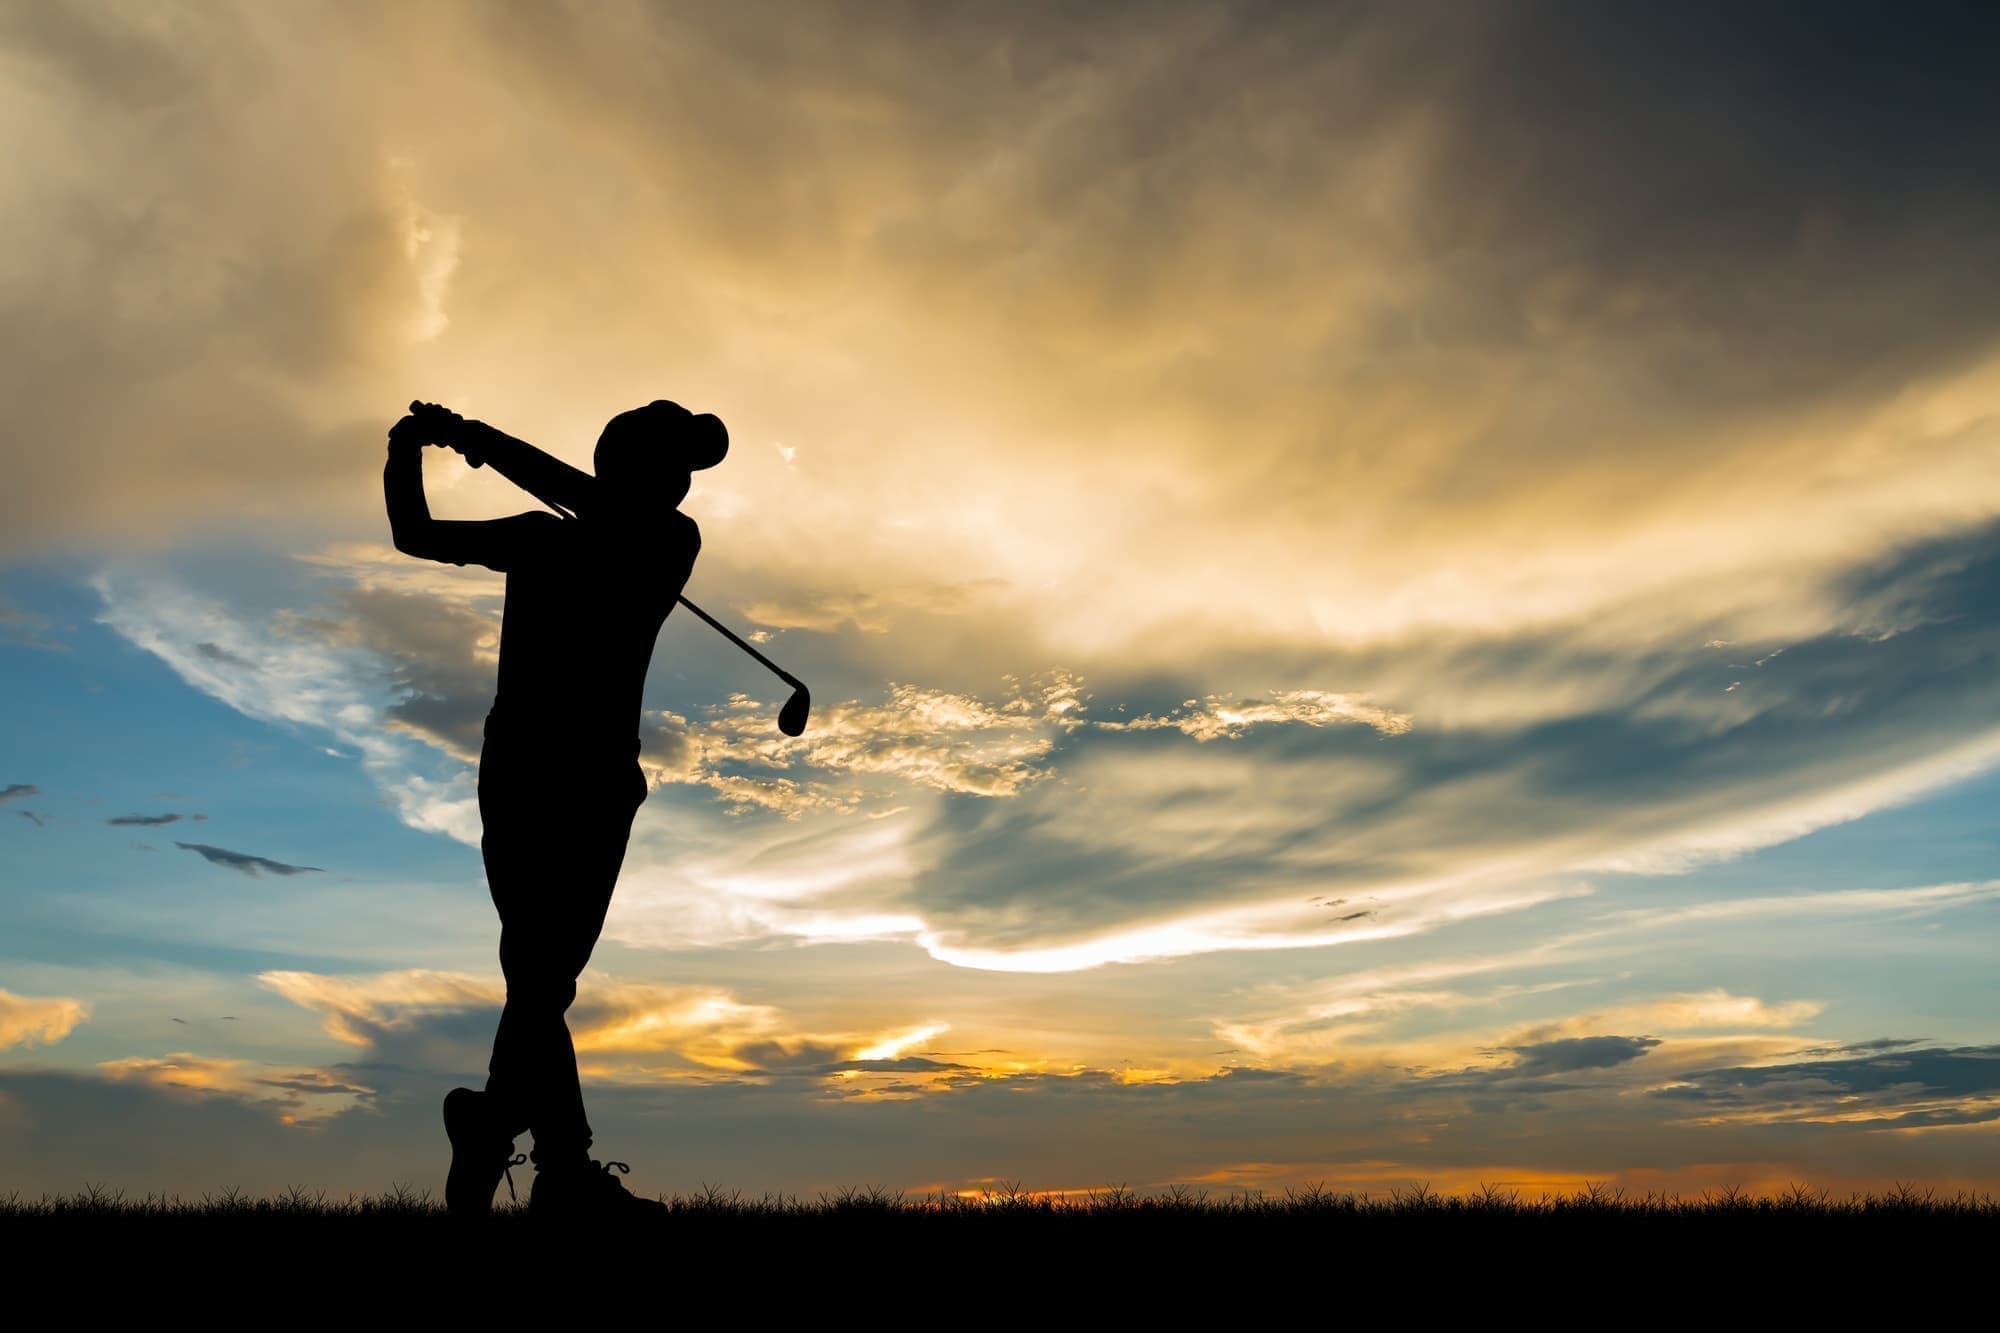 足も最も駆使するゴルフ。ニュートラモーション・スポーツインソールの威力。歩く、回転する、踏ん張る。ゴルフは足を駆使するスポーツです。アドレス時の適正体重配分、歩く時の姿勢、スイング中の重心コントロール。ムジークのニュートラモーション・スポーツインソールなら、あなたのゴルフがもっと快適になります。